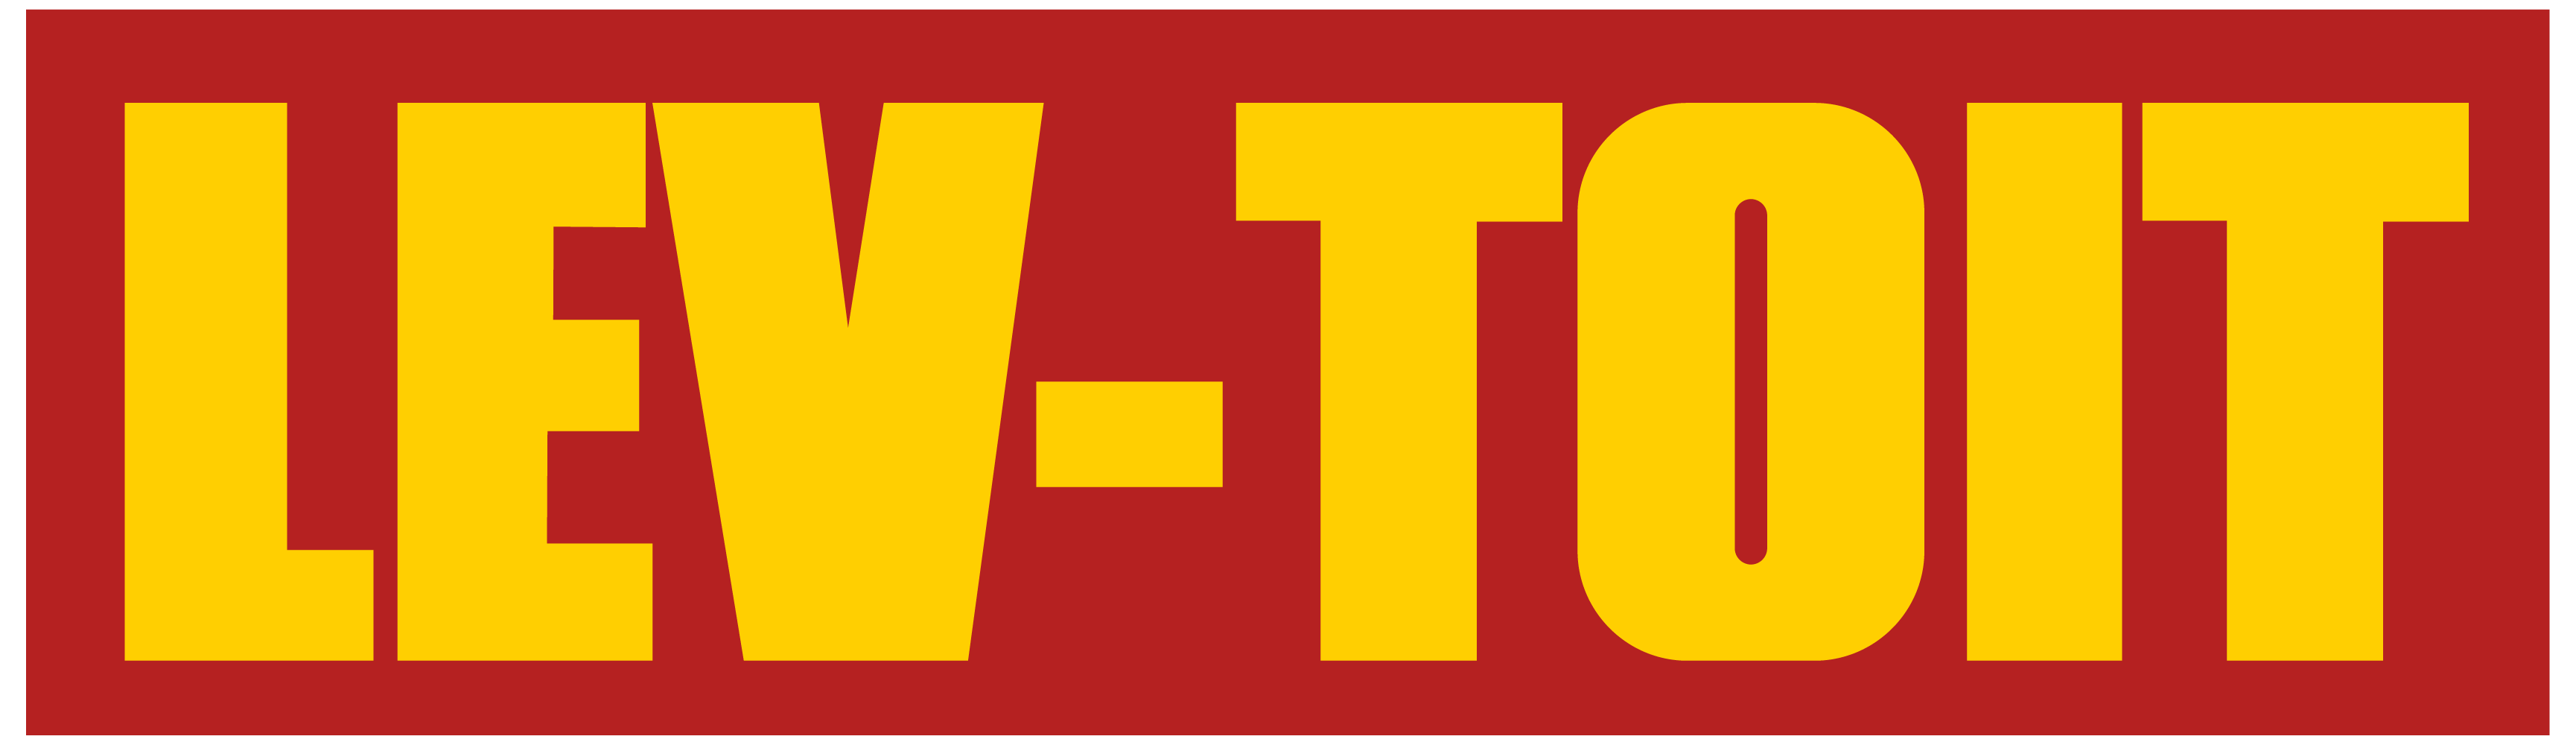 logo-LEV-TOIT